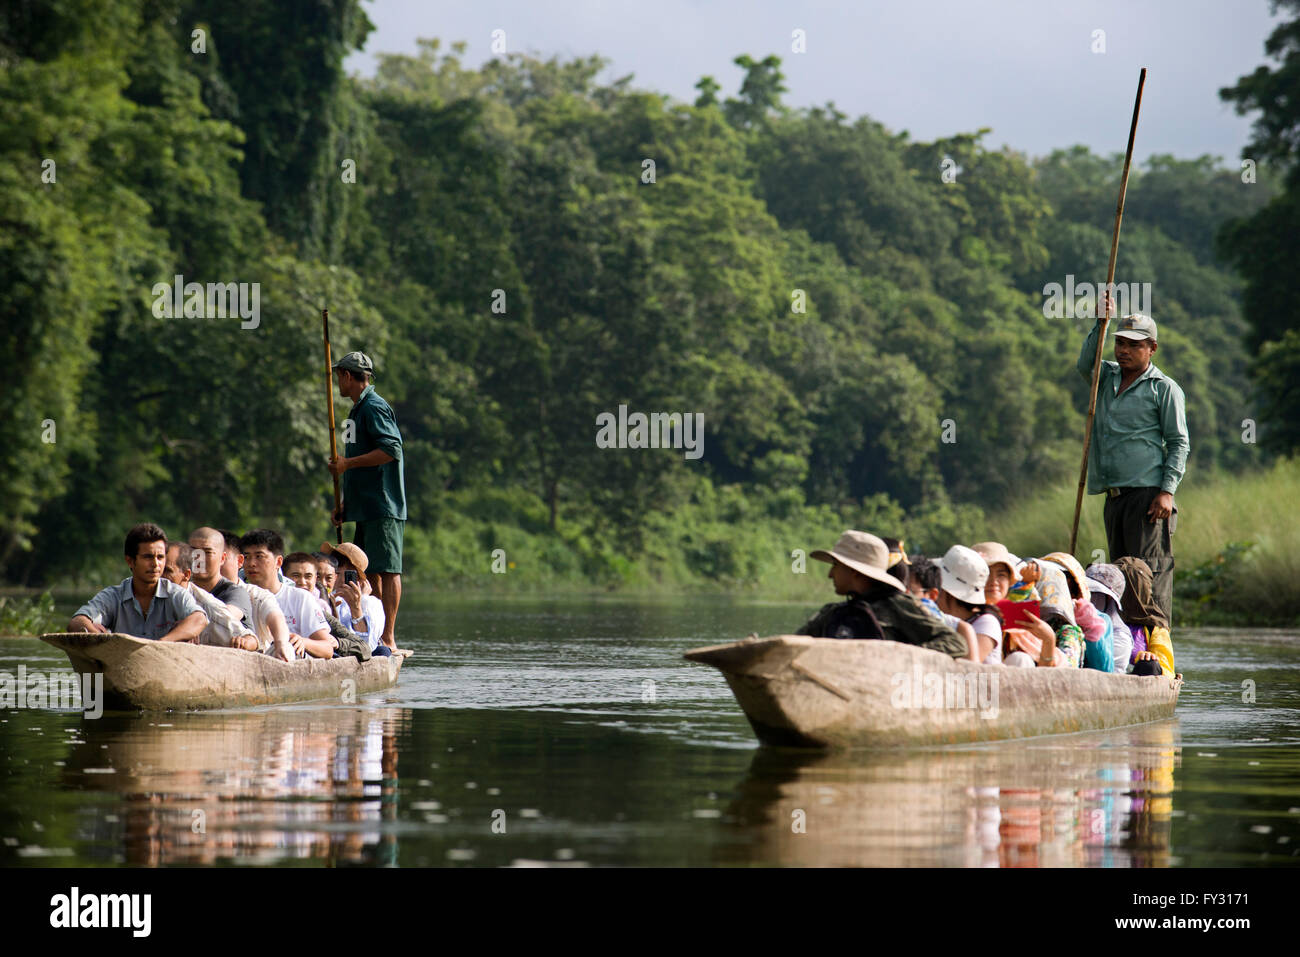 Gita in barca sul fiume Rapti, Chitwan il parco nazionale, Nepal, Asia Foto Stock